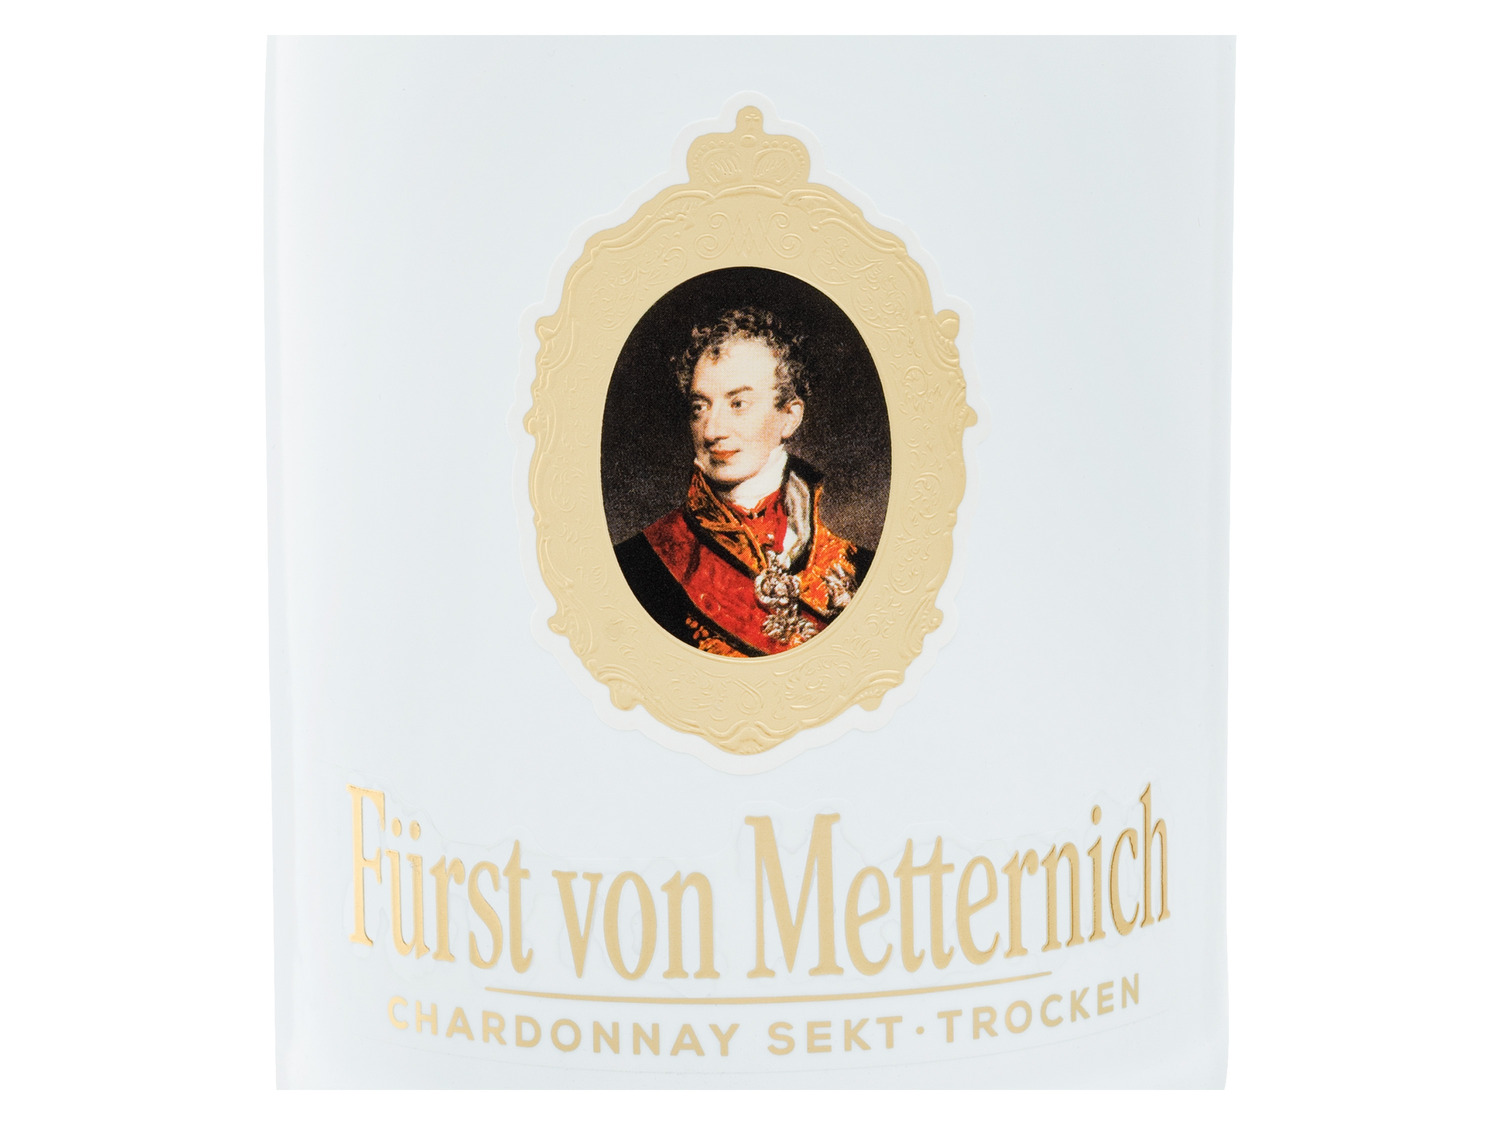 Fürst von Metternich Deutscher Sekt trocken… Chardonnay